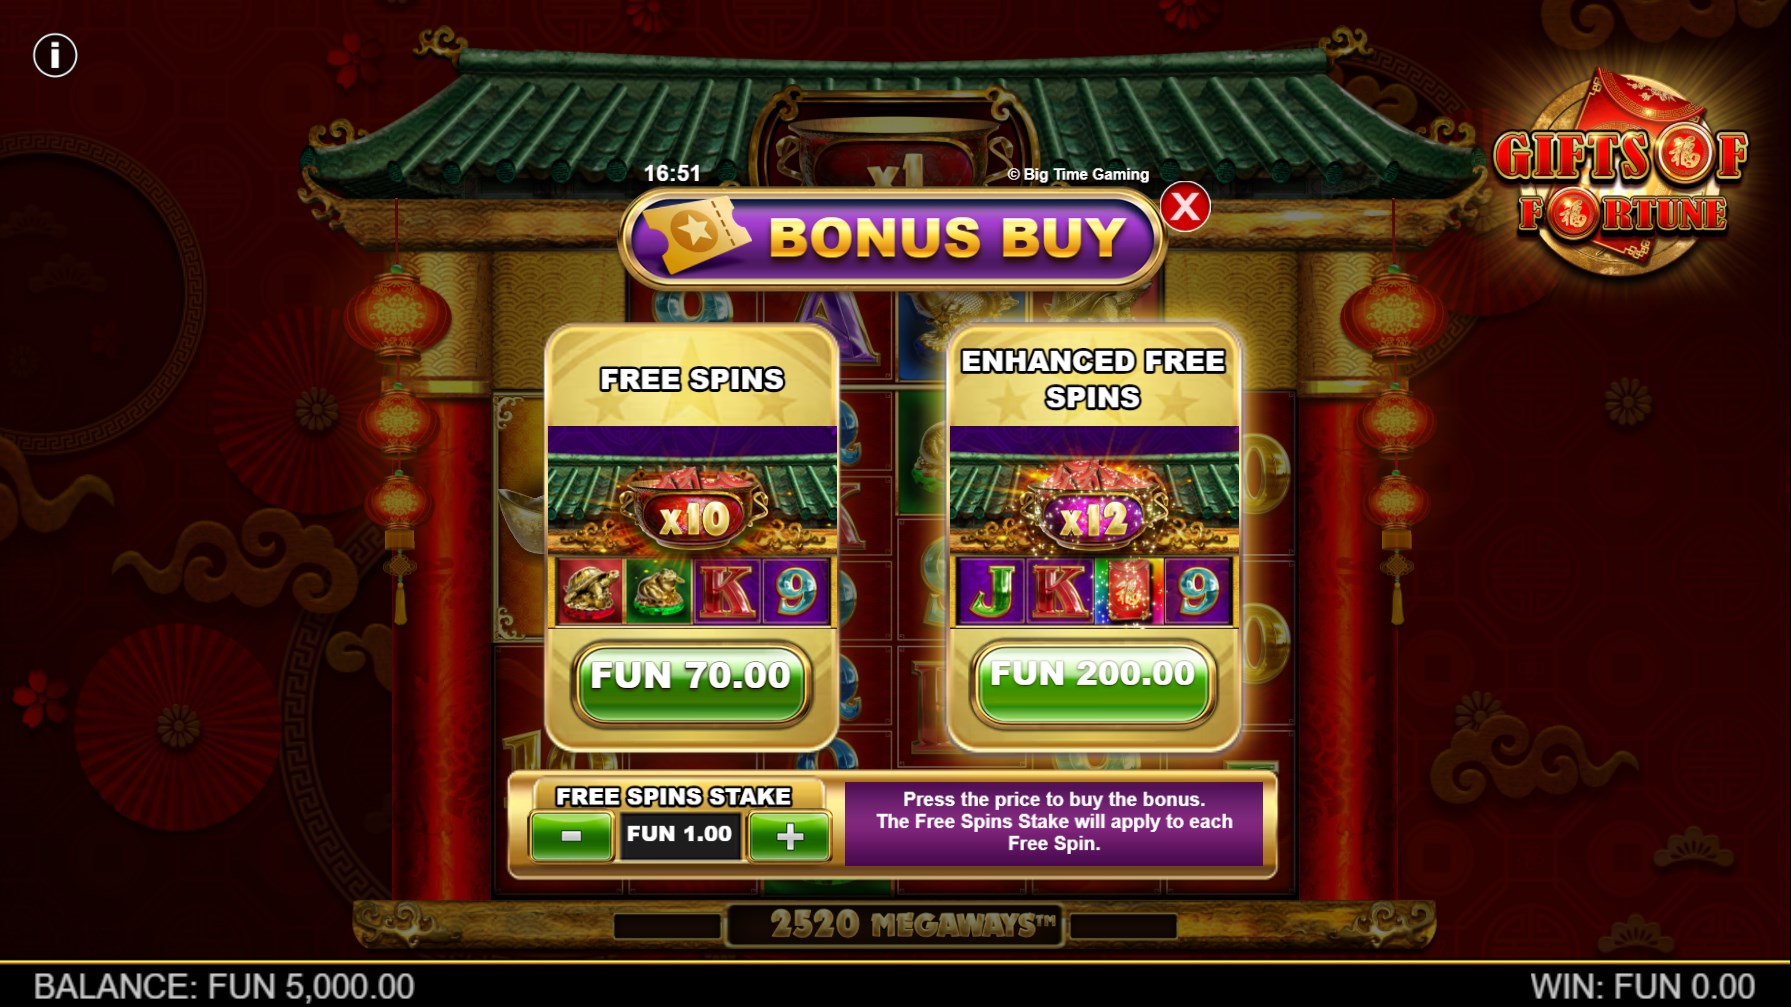 Gifts of Fortune - Bonus Buy Menu